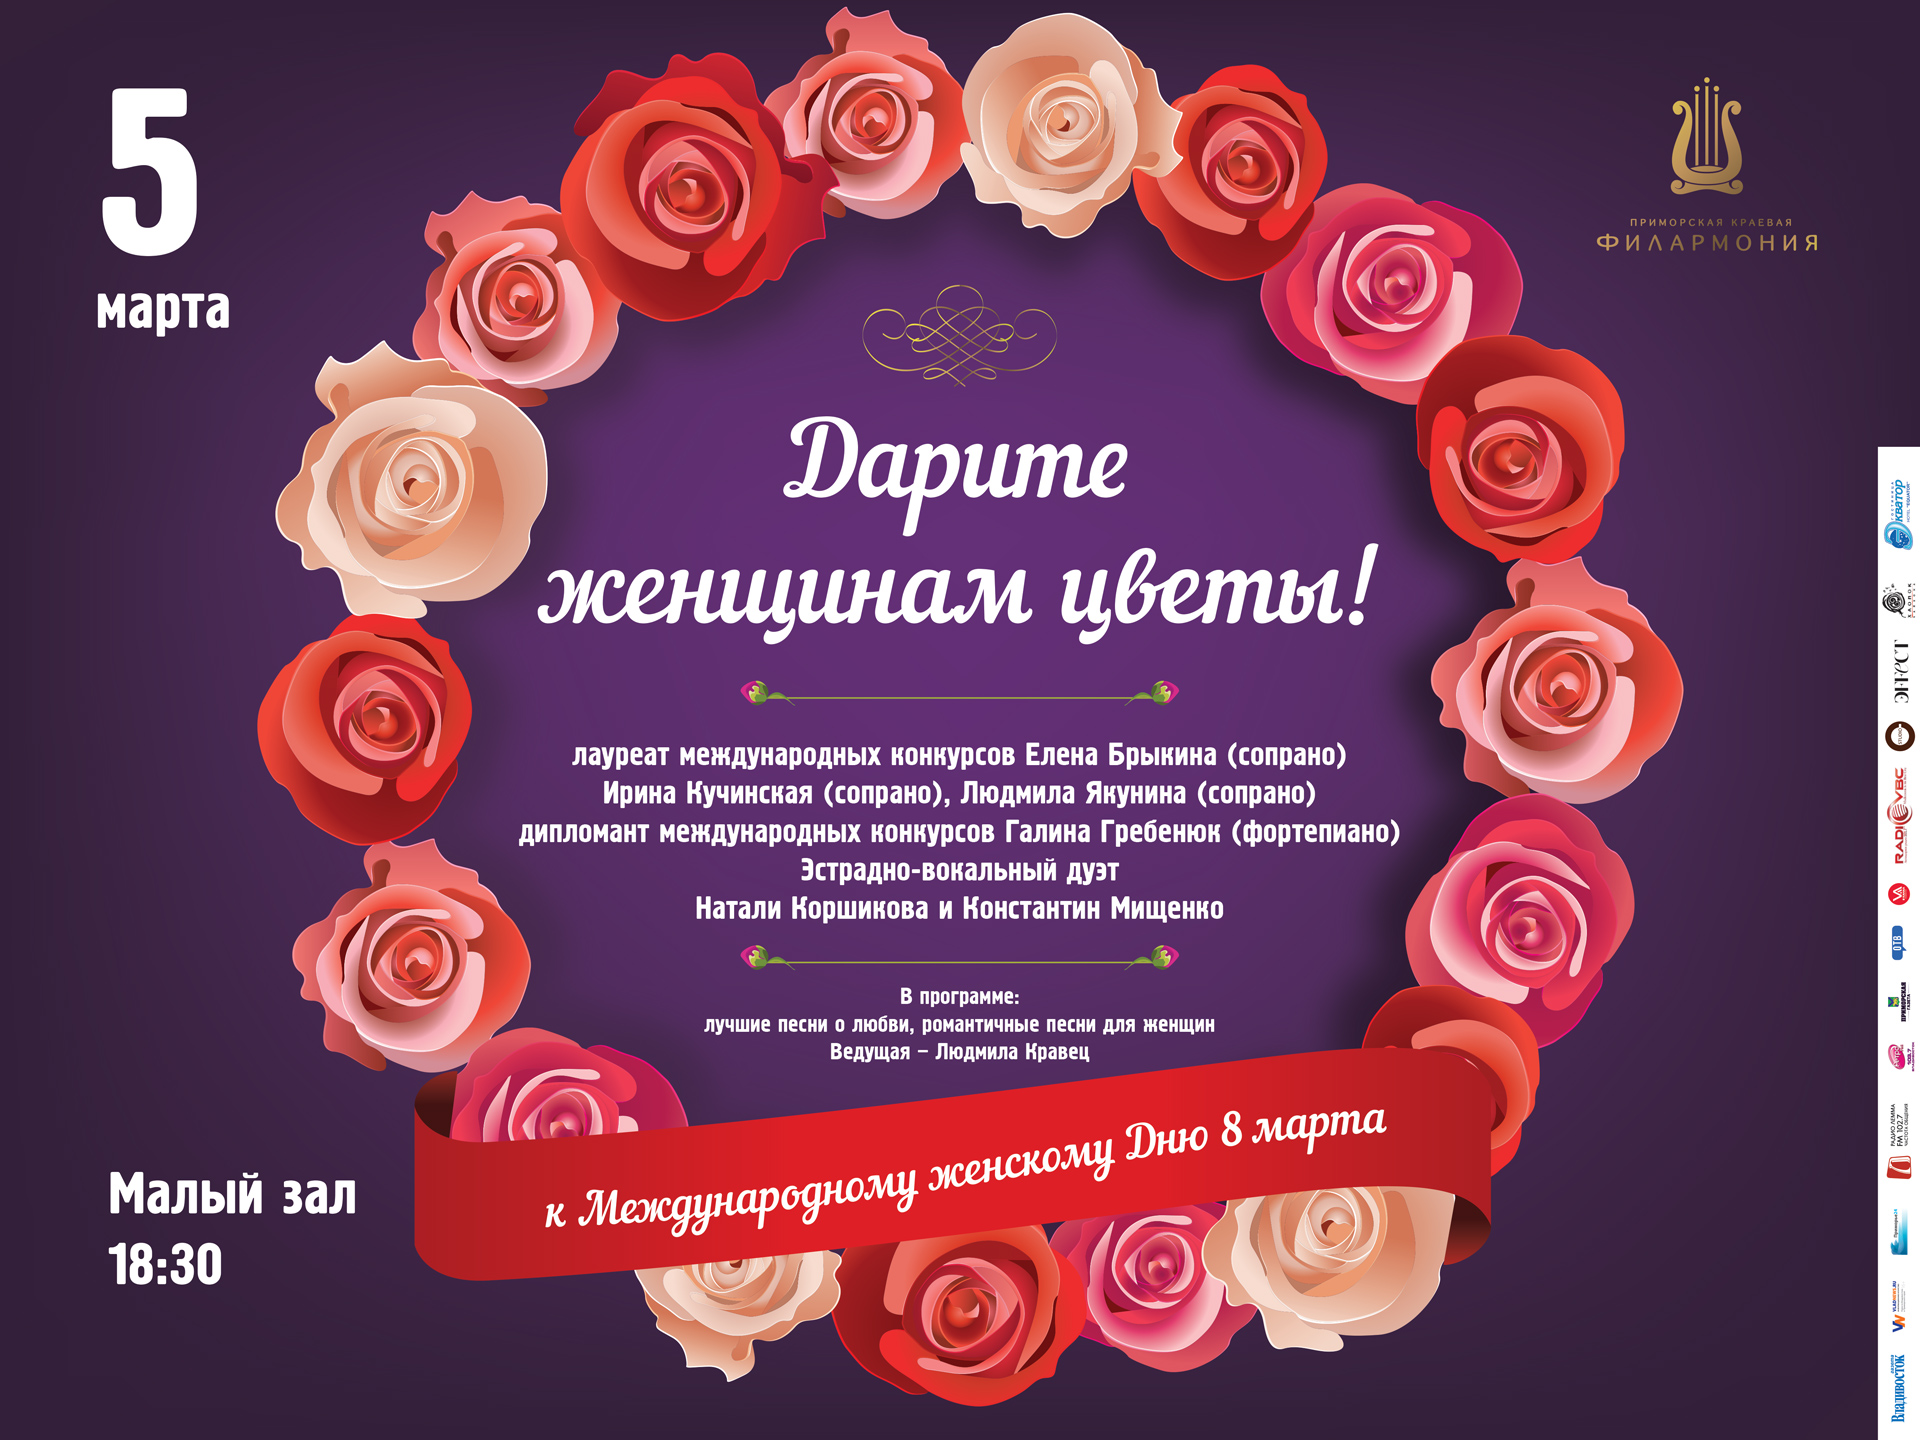 5 марта Малый зал 18.30 Праздничная концертная программа «Дарите женщинам цветы!» к Международному женскому Дню 8 марта